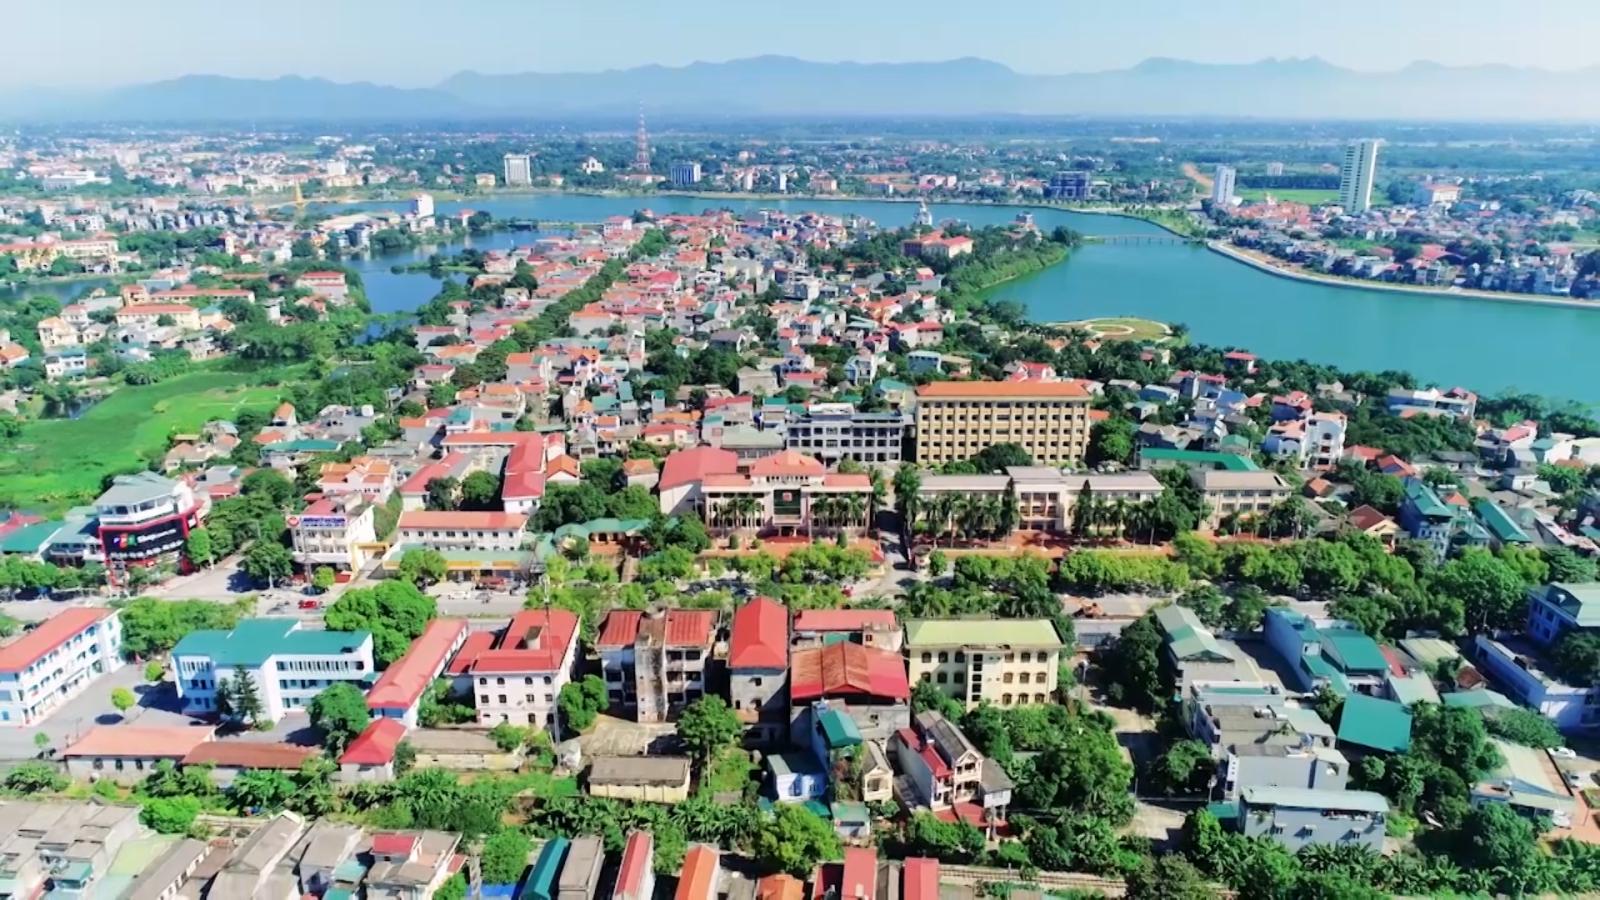 Hình ảnh một góc TP. Việt Trì tỉnh Phú Thọ nhìn từ trên cao